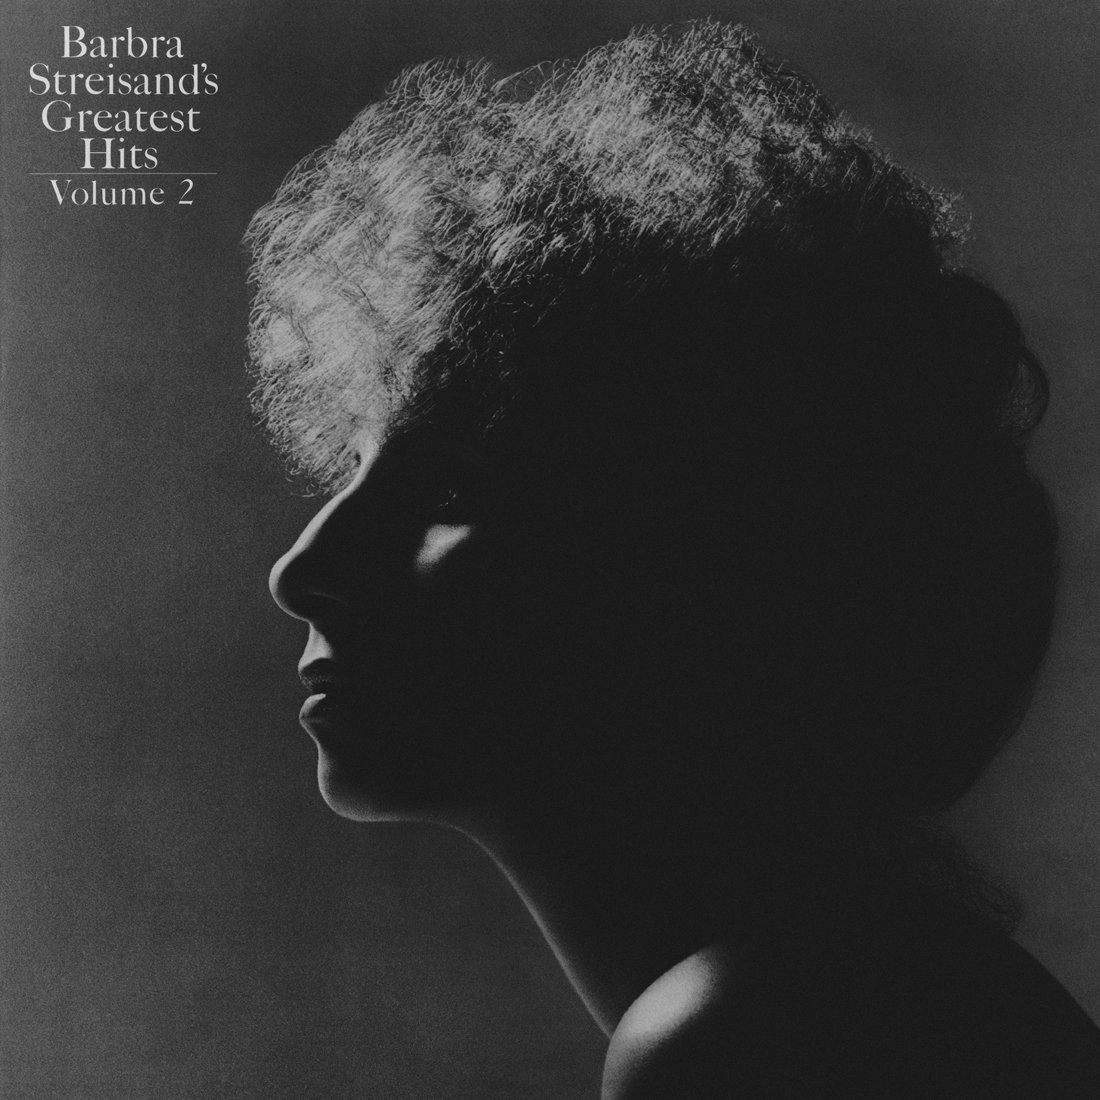 Original LP album cover for Barbra Streisand's Greatest Hits Volume 2. Scan by: Kevin Schlenker